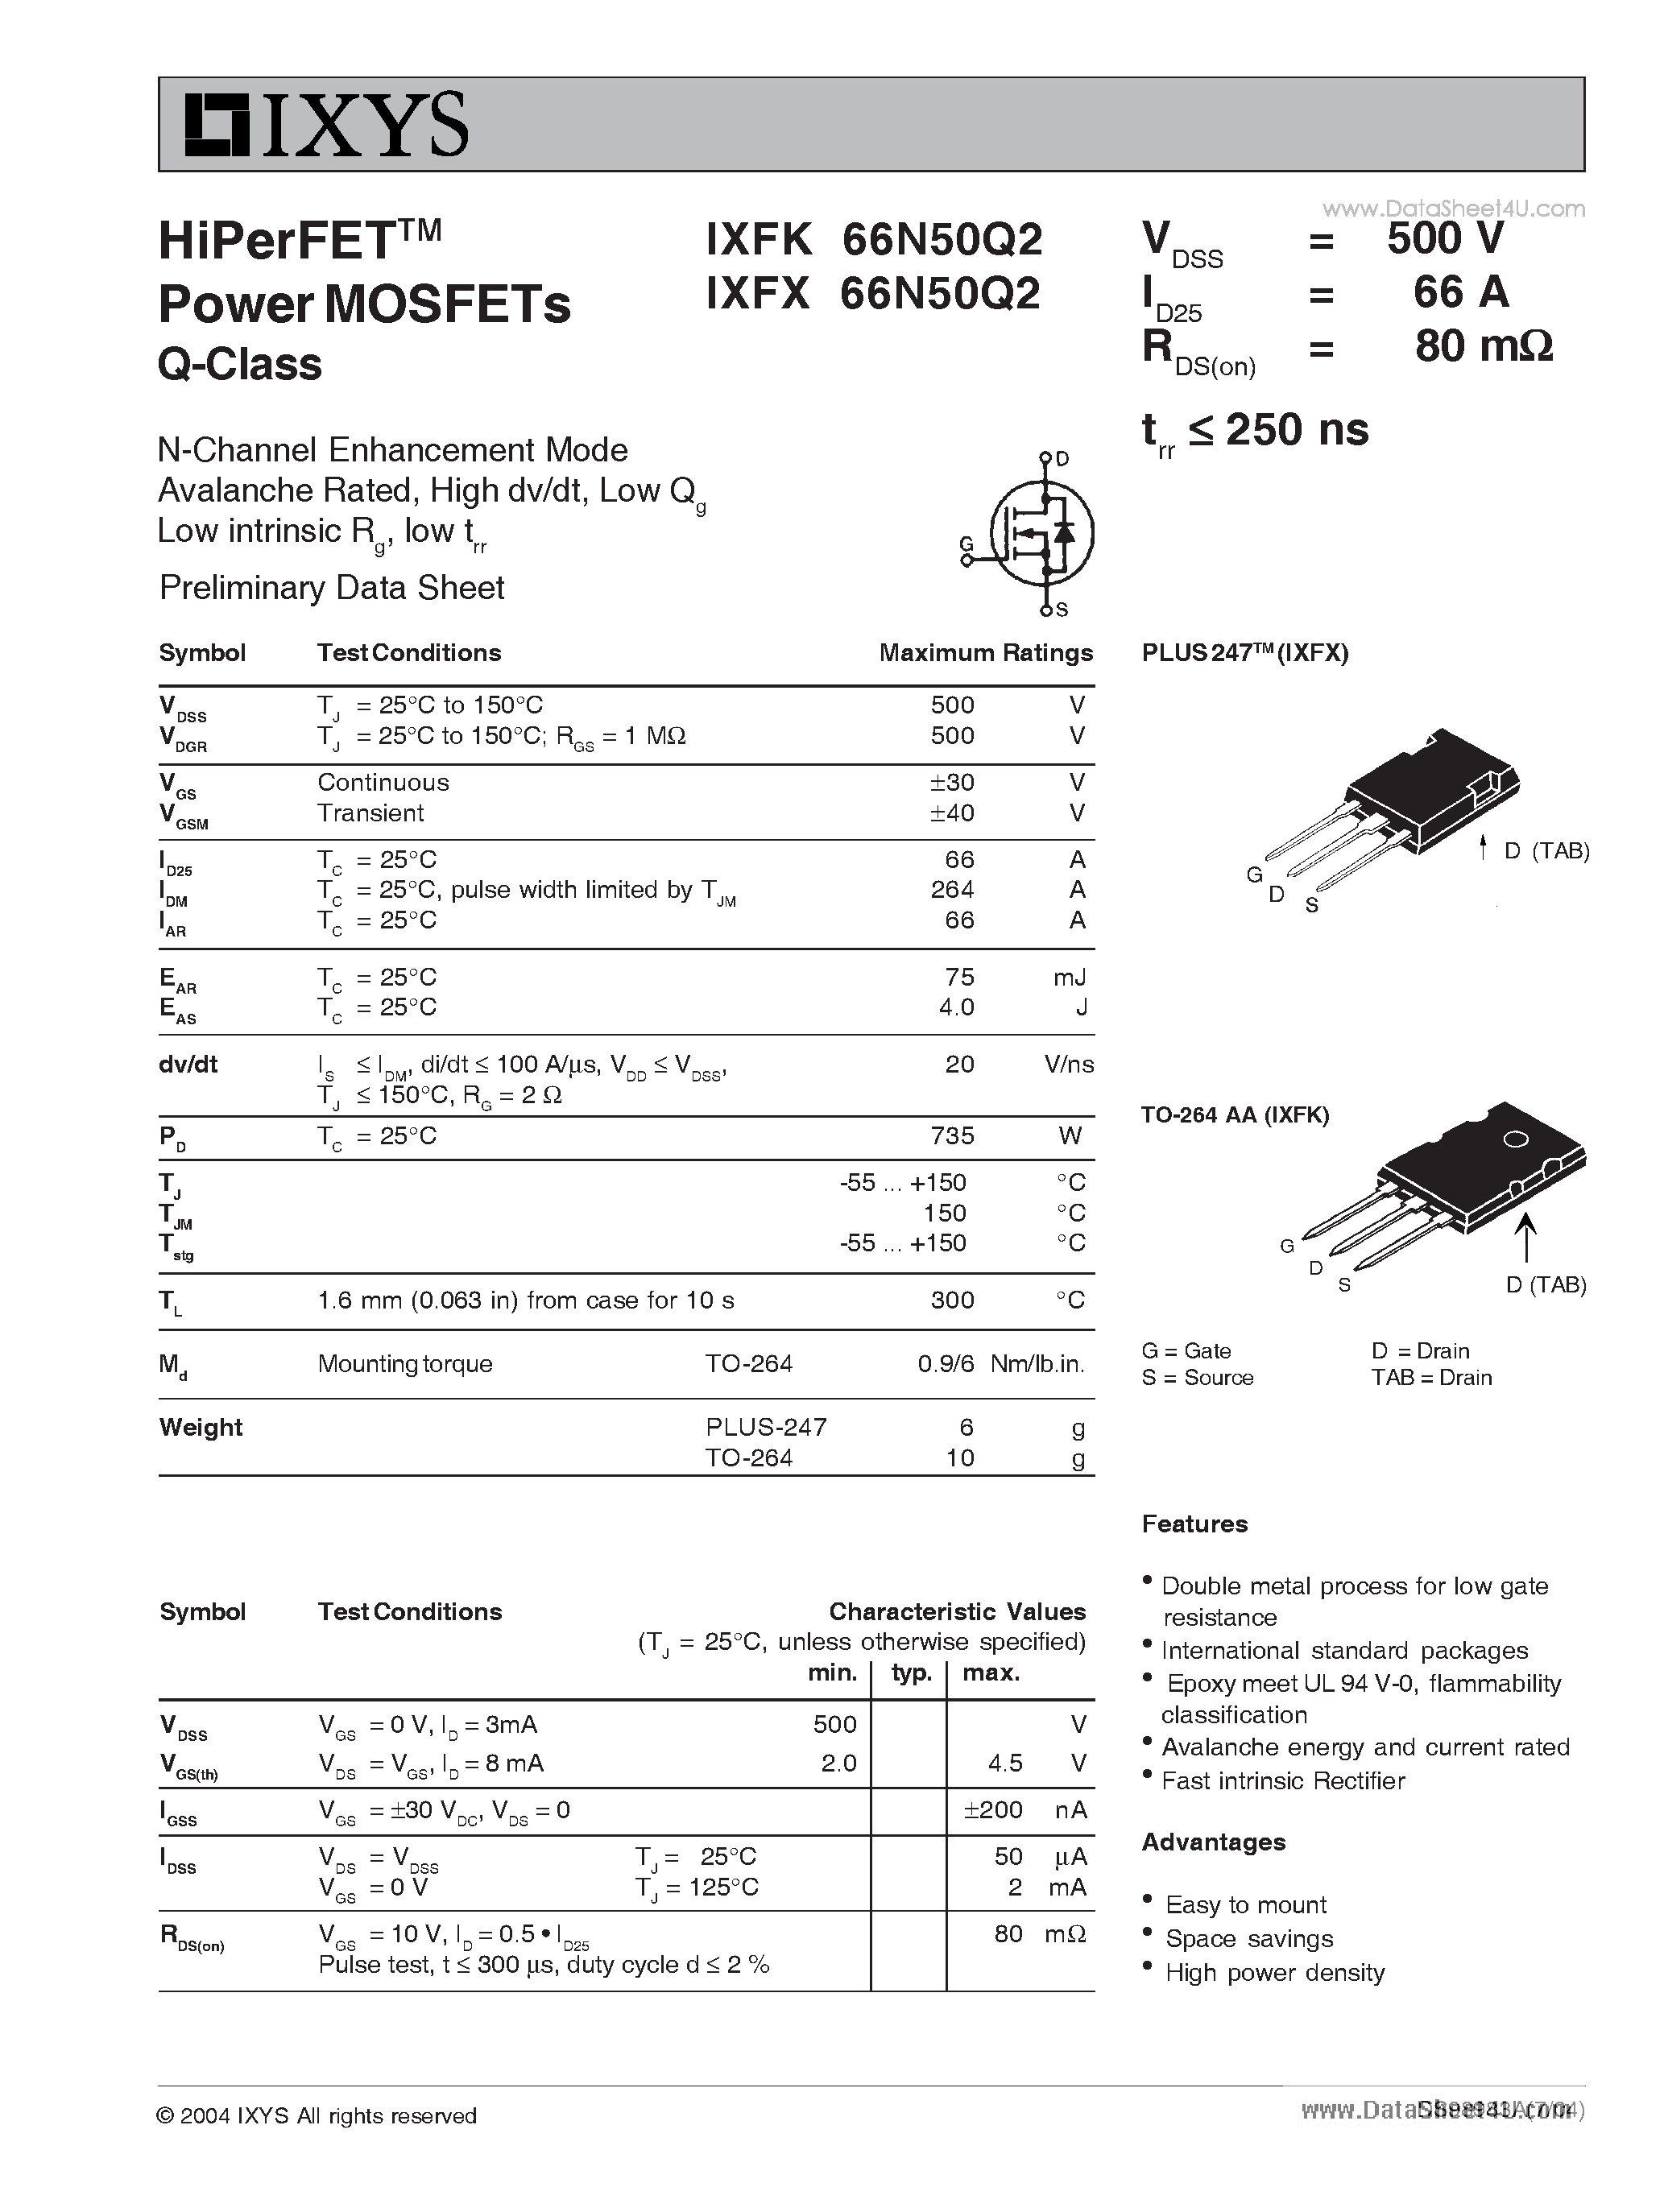 Даташит IXFK66N50Q2 - HiPerFET Power MOSFETs Q-Class страница 1